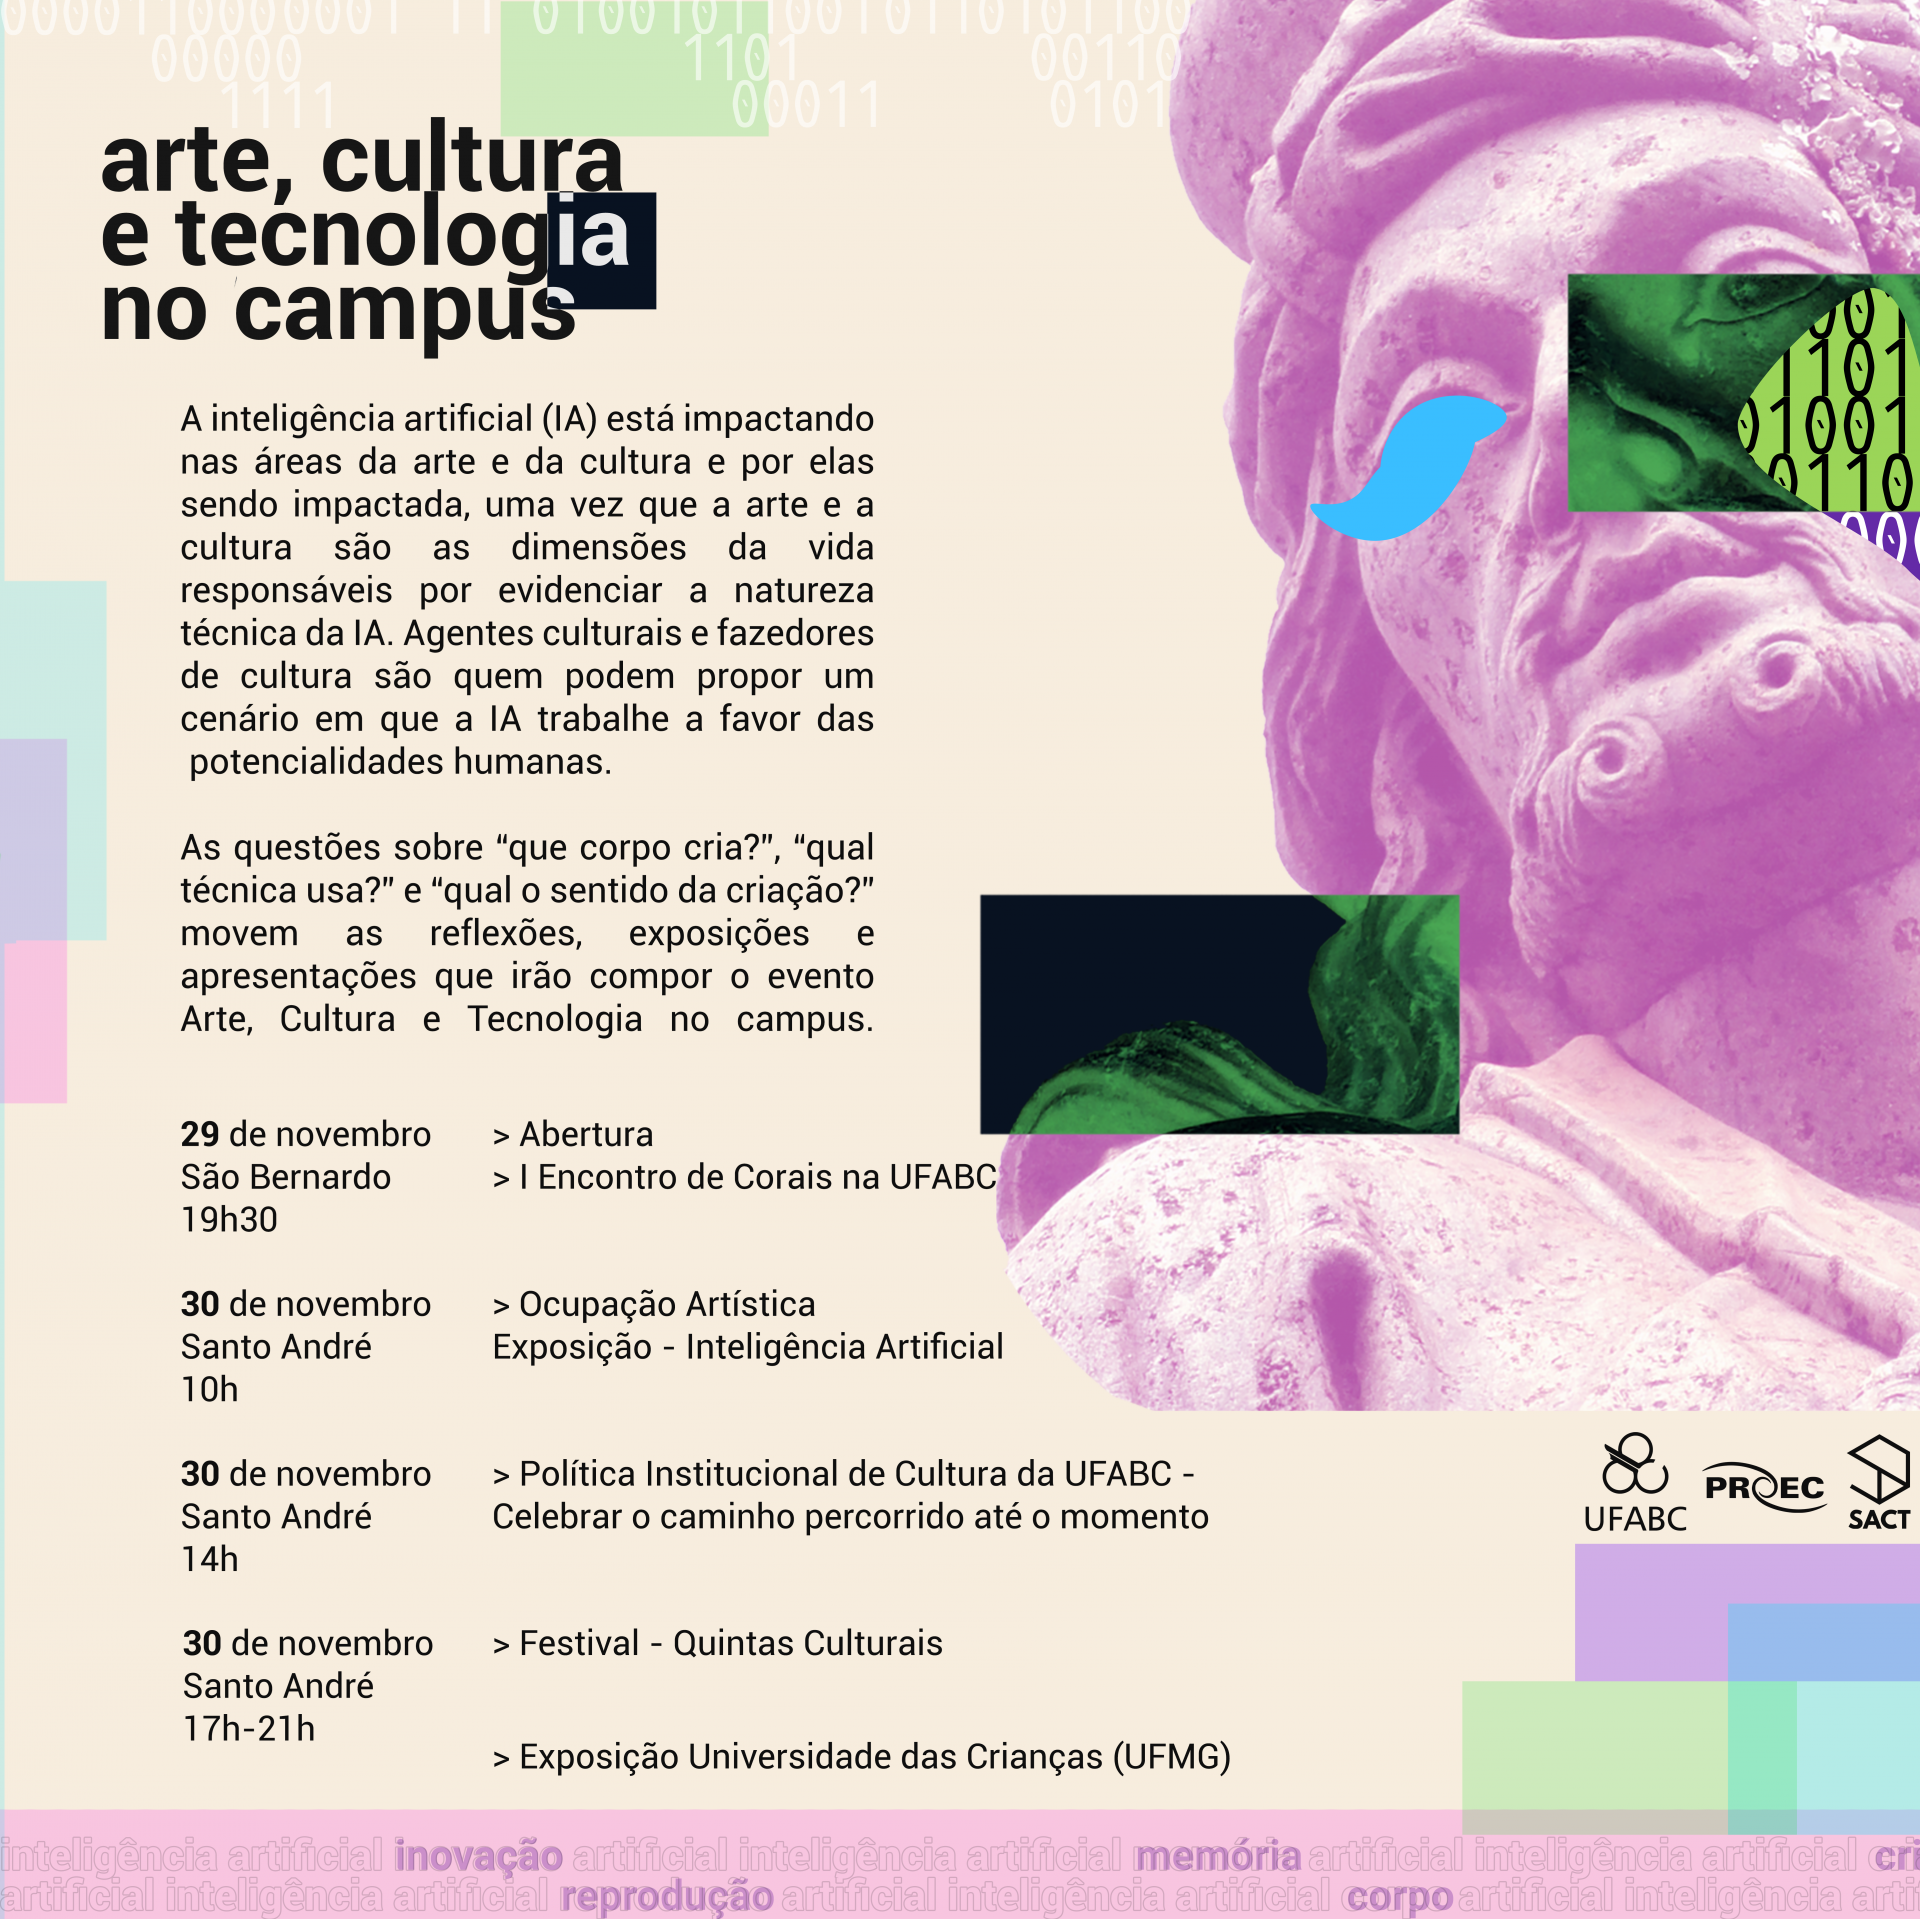 SACT – Semana de Arte, Cultura e Tecnologia